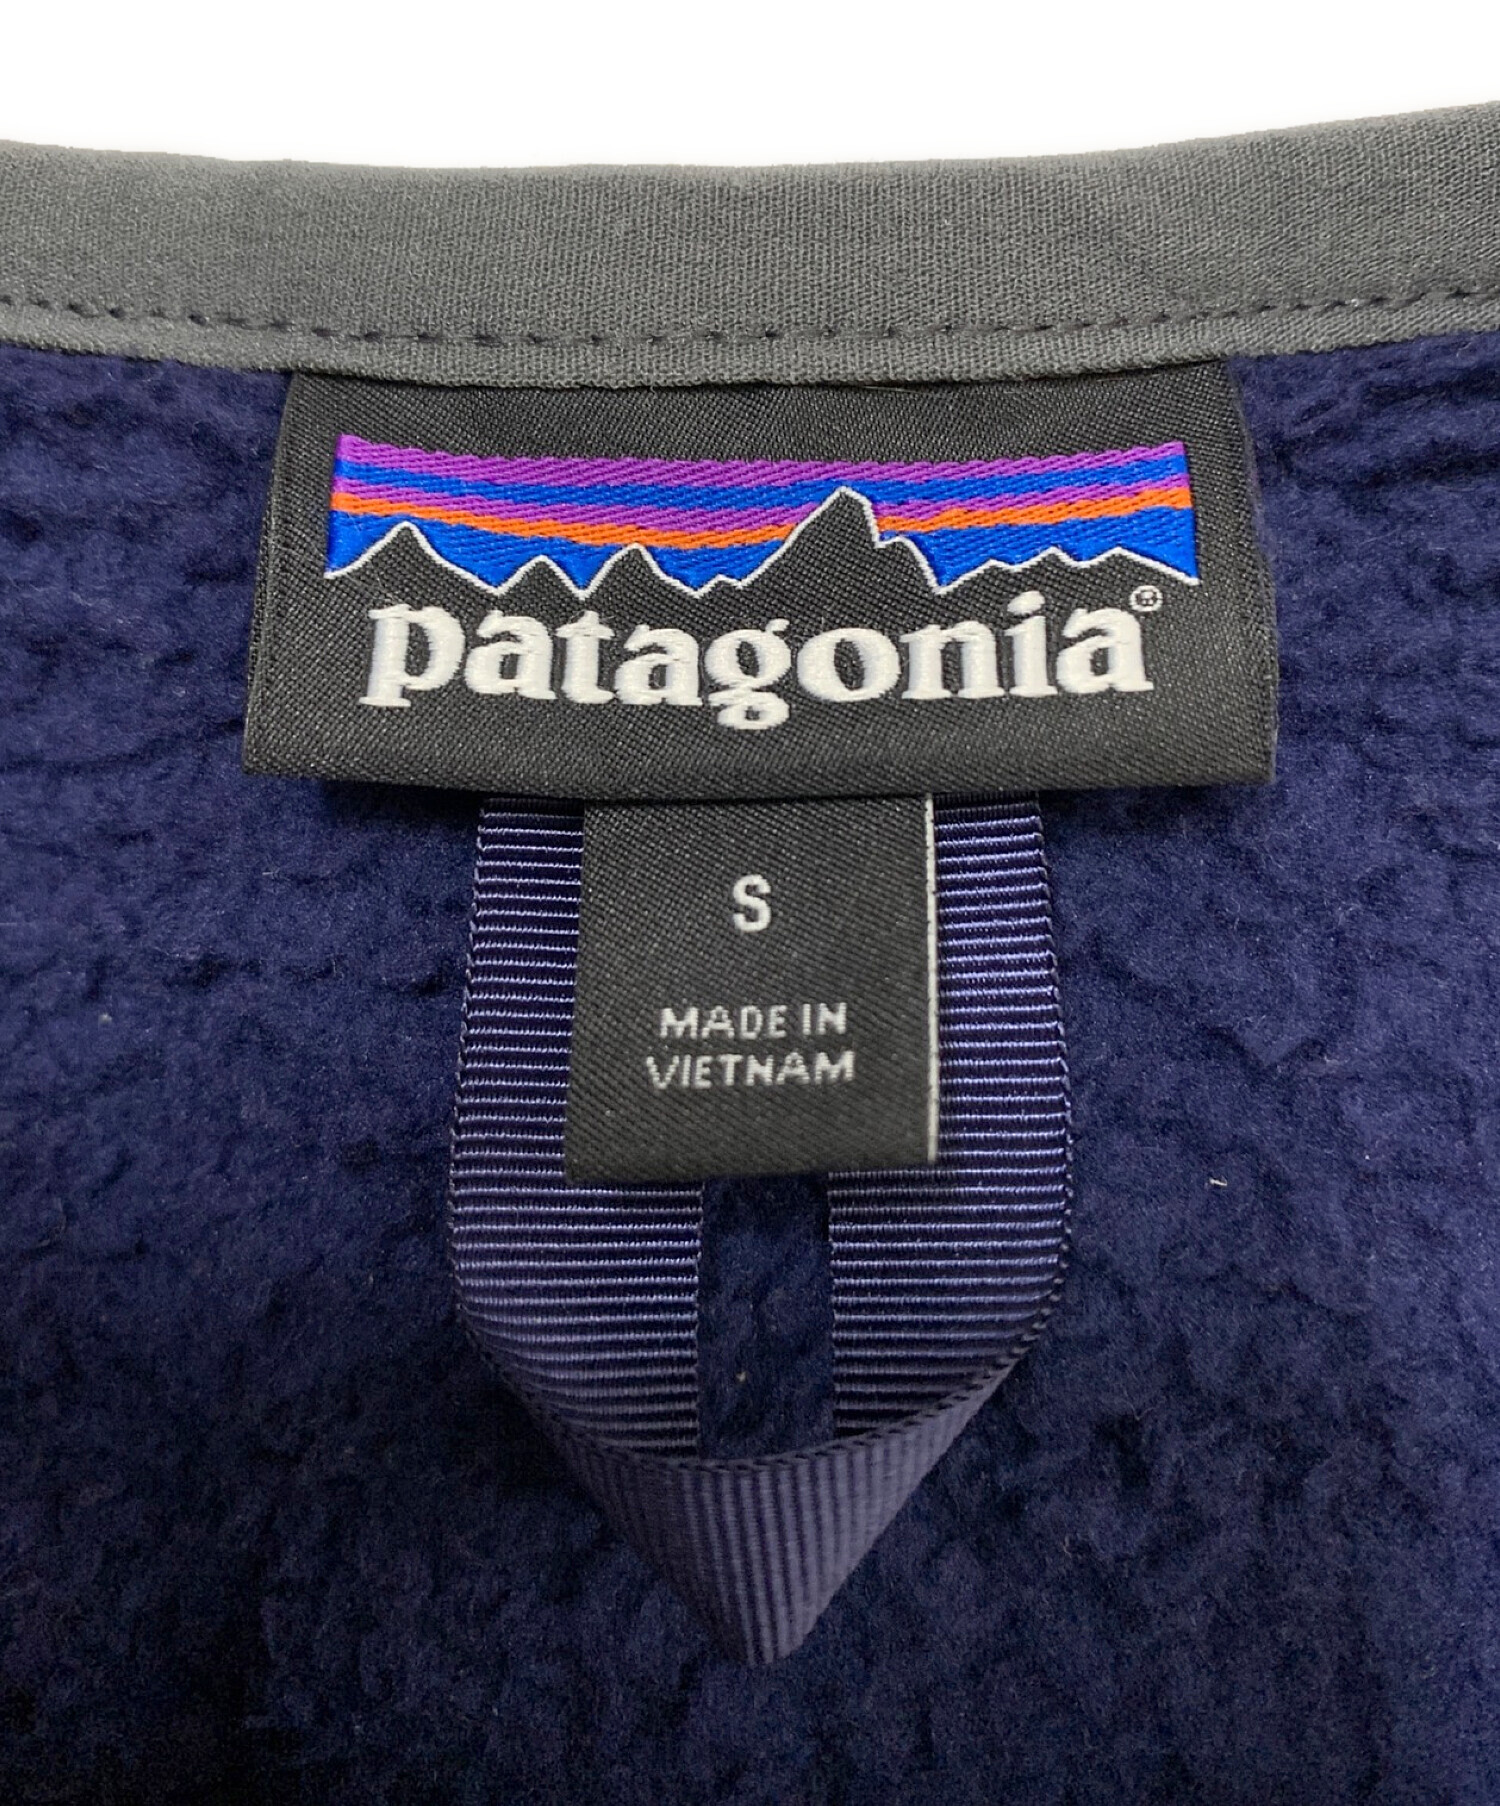 Patagonia (パタゴニア) ロスガトスクルーネックフリースジャケット ネイビー サイズ:S